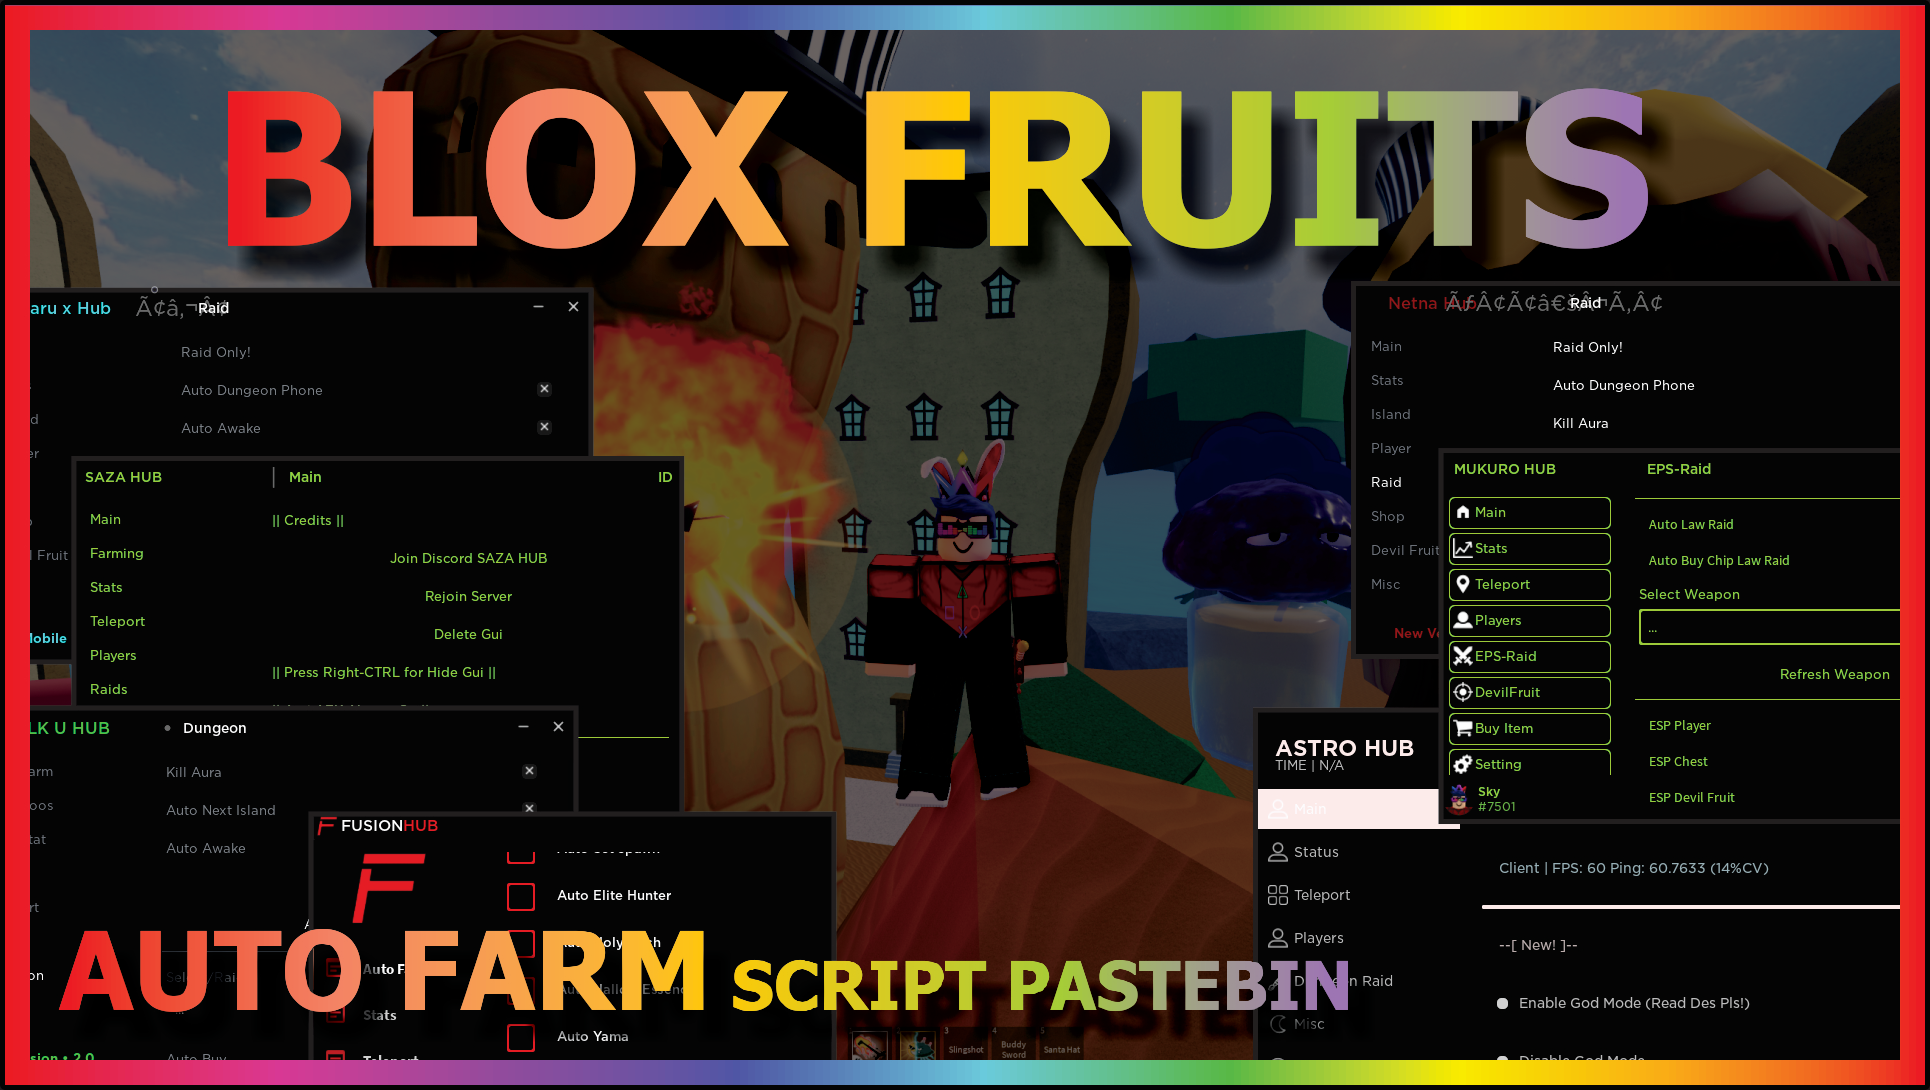 Blox Fruits #1 Script GUI - 50+ Scripts in one GUI - Roblox Scripts